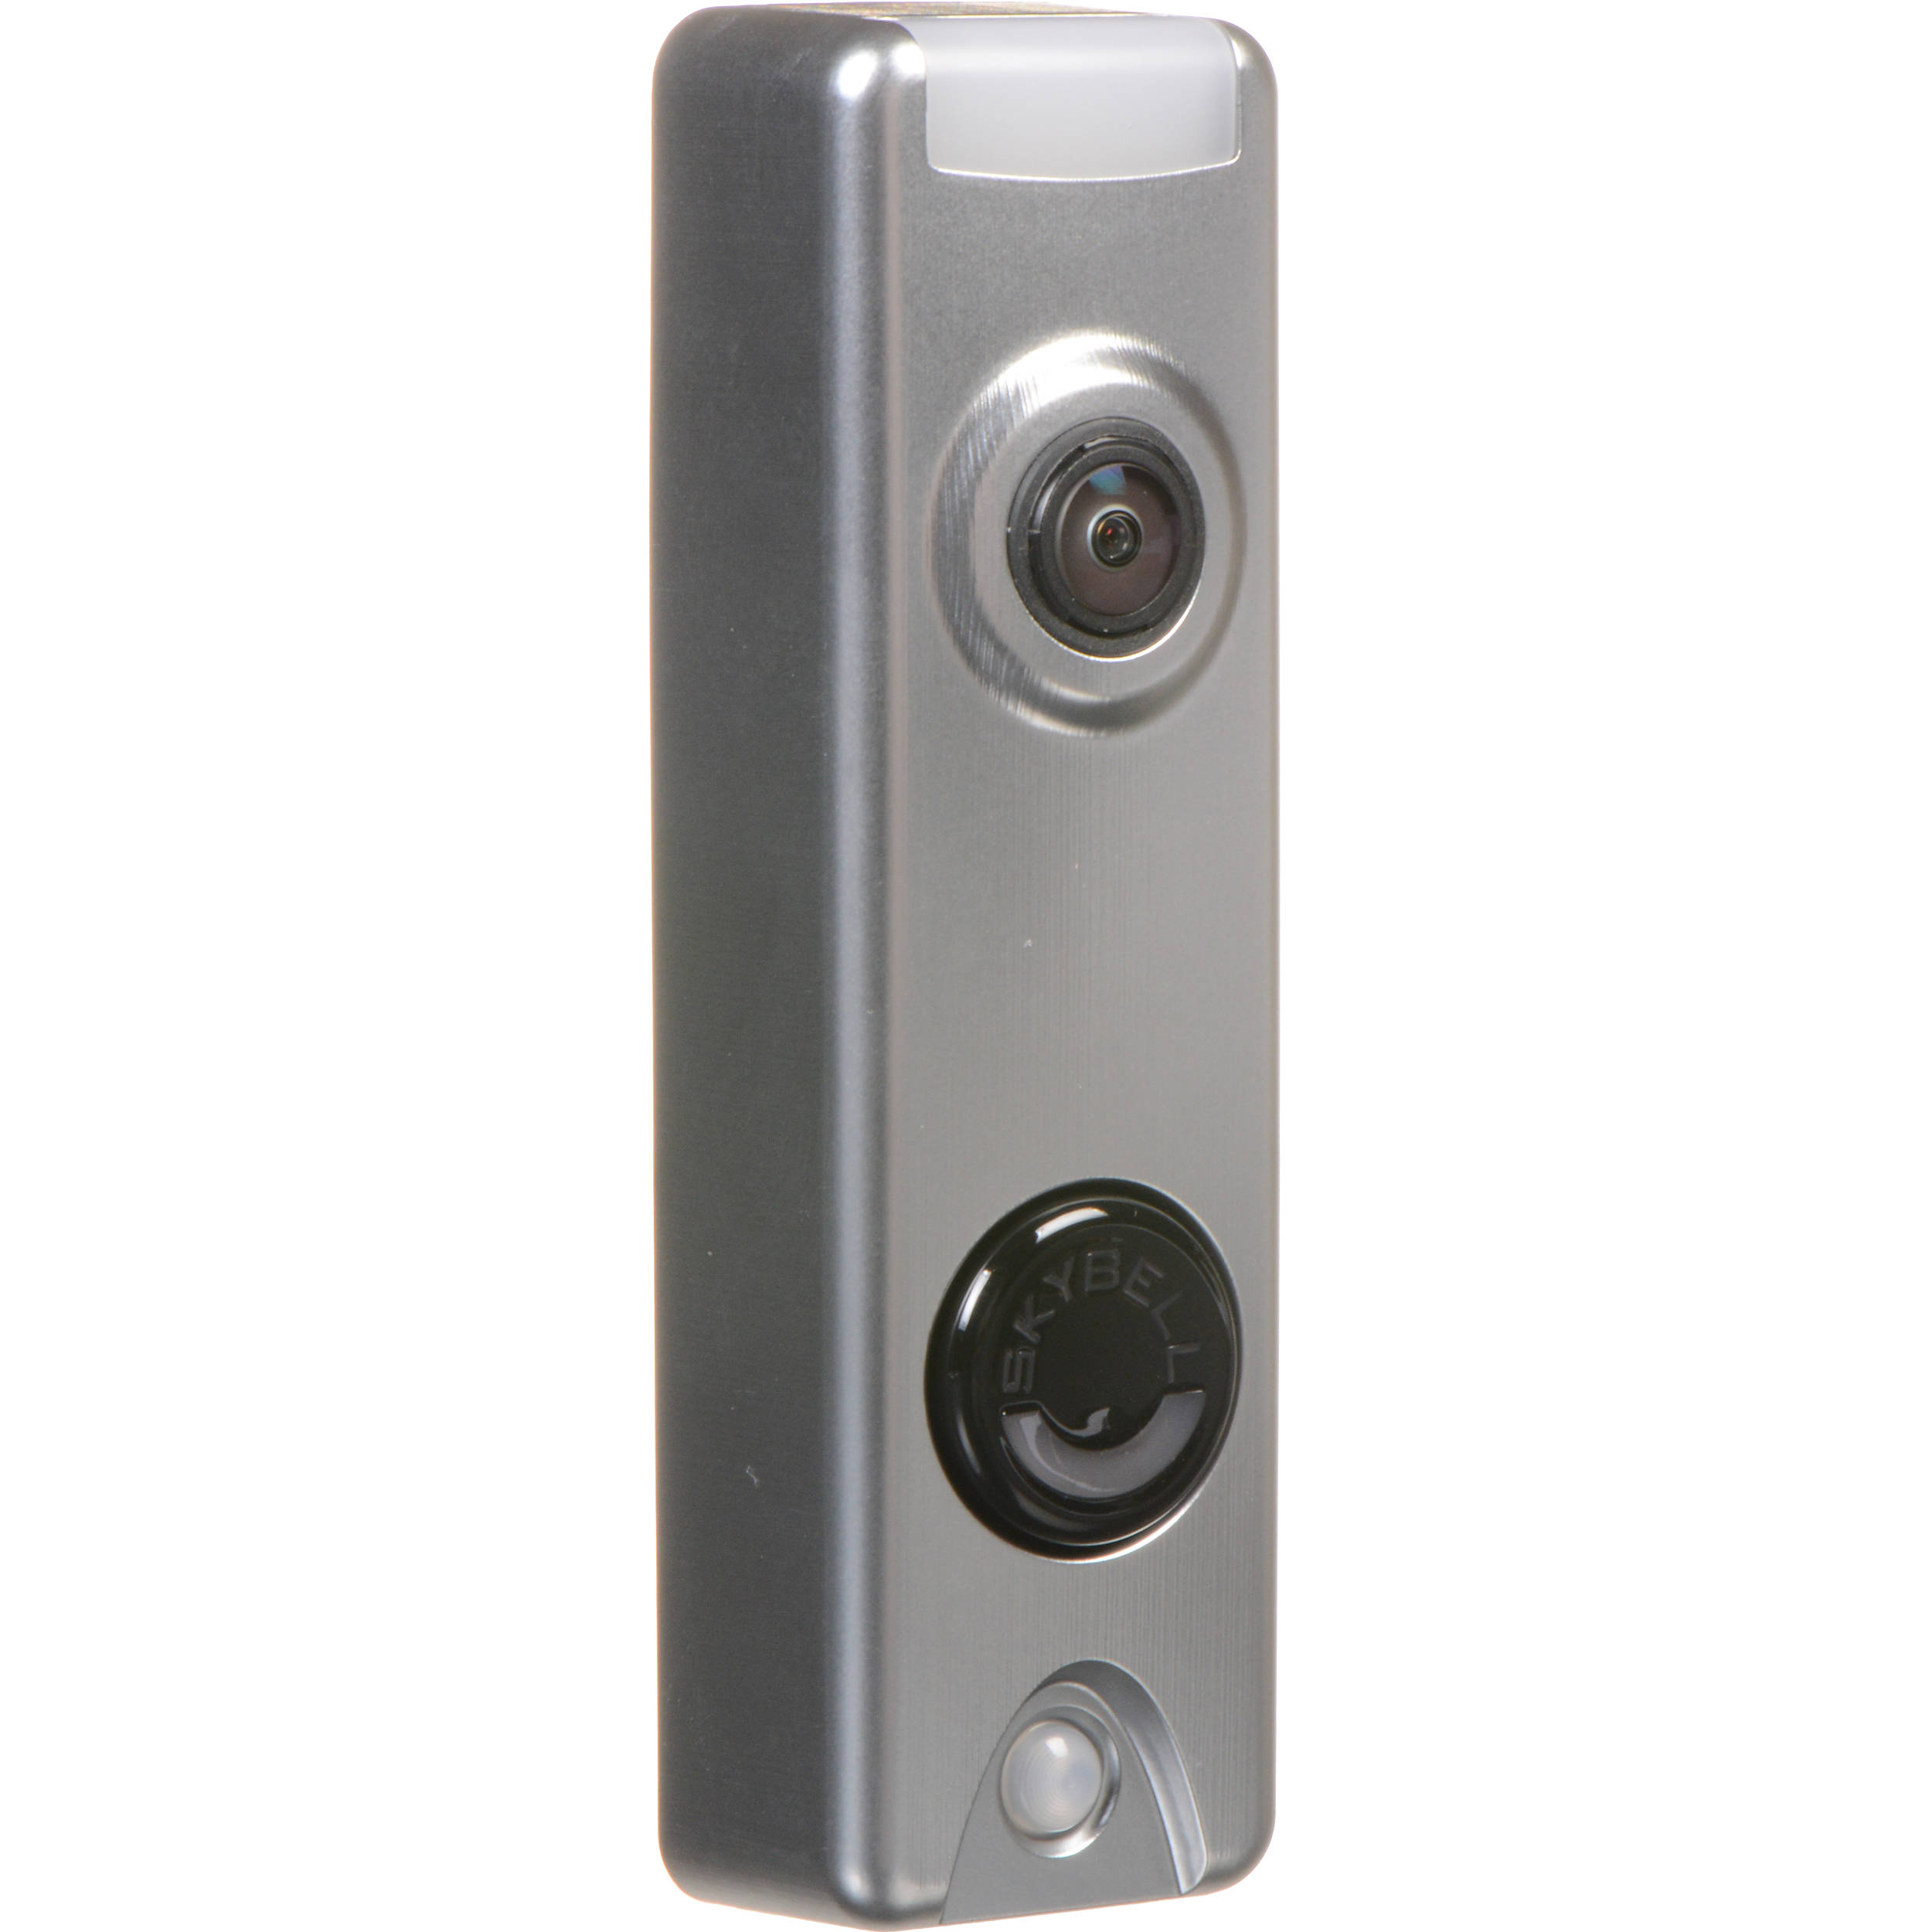 skybell camera doorbell